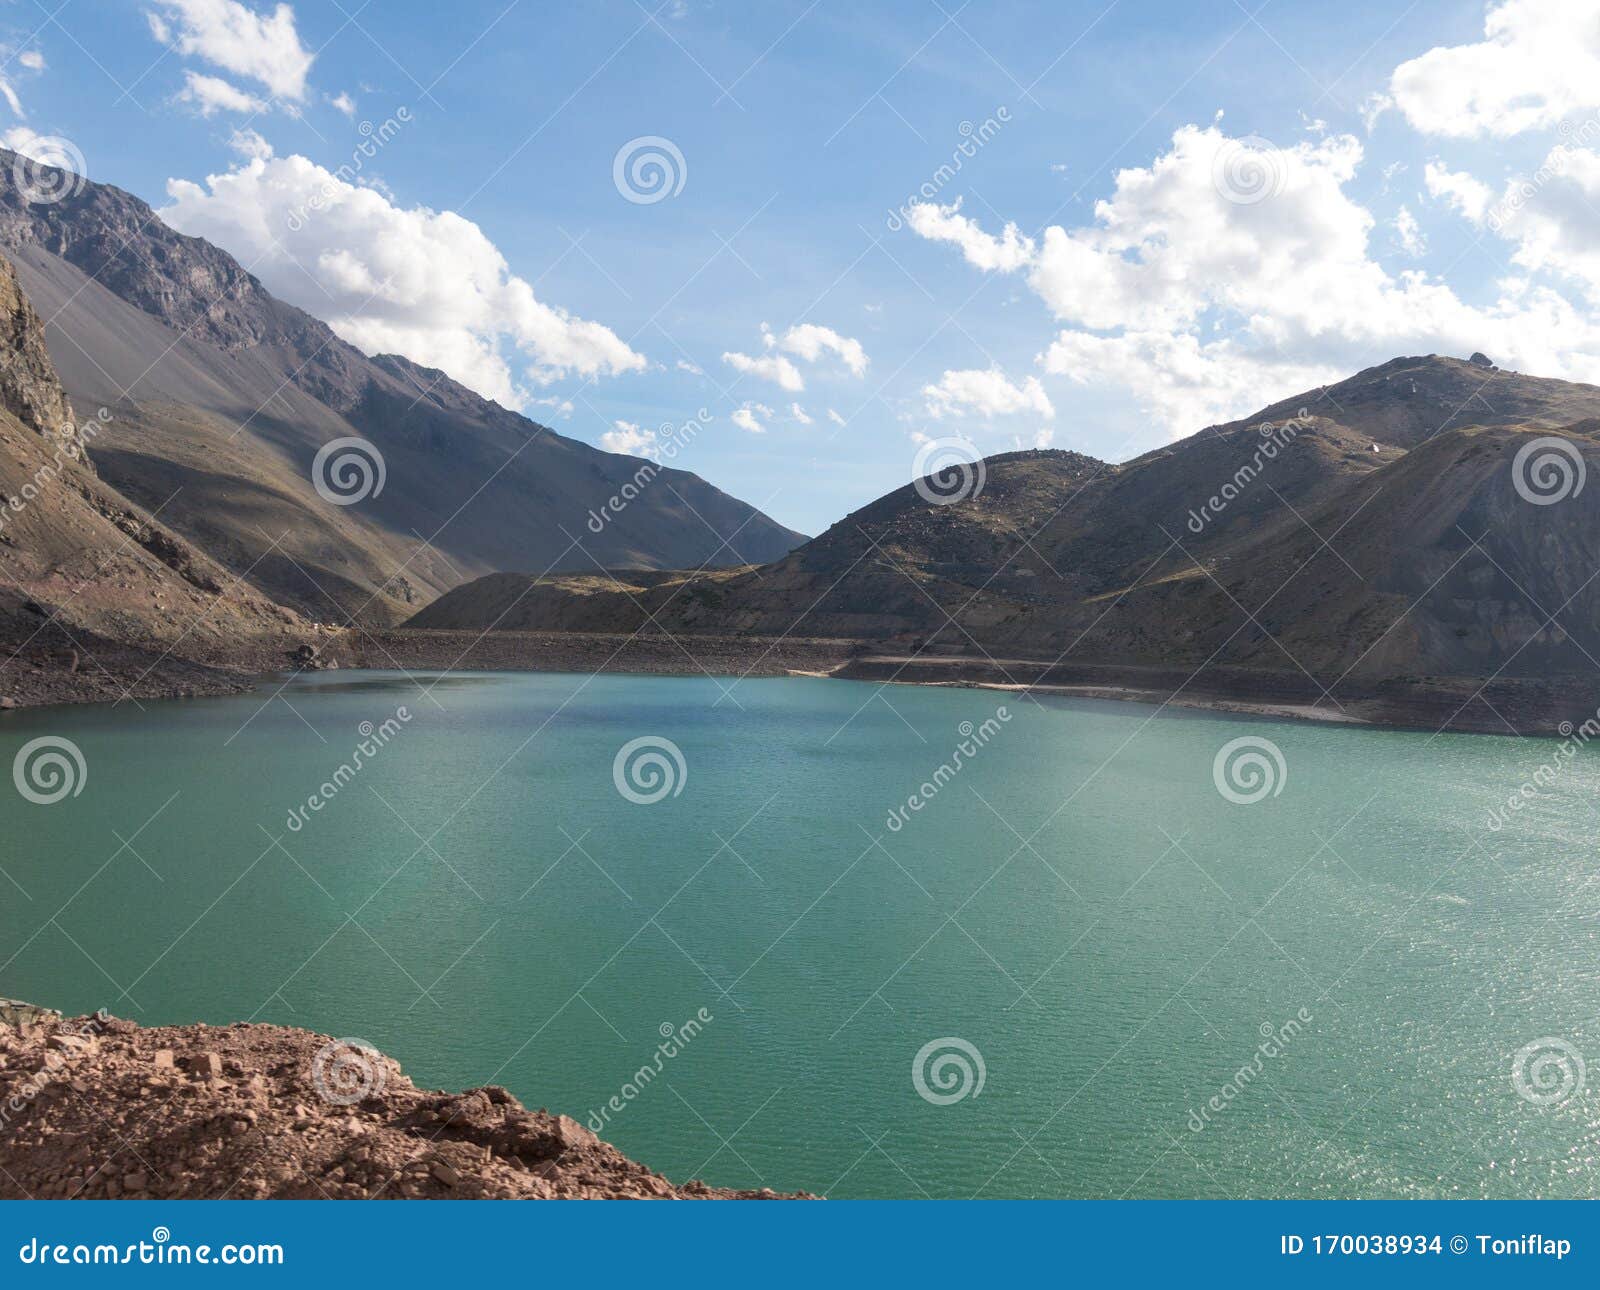 lake of yeso. cajon del maipo. santiago of chile